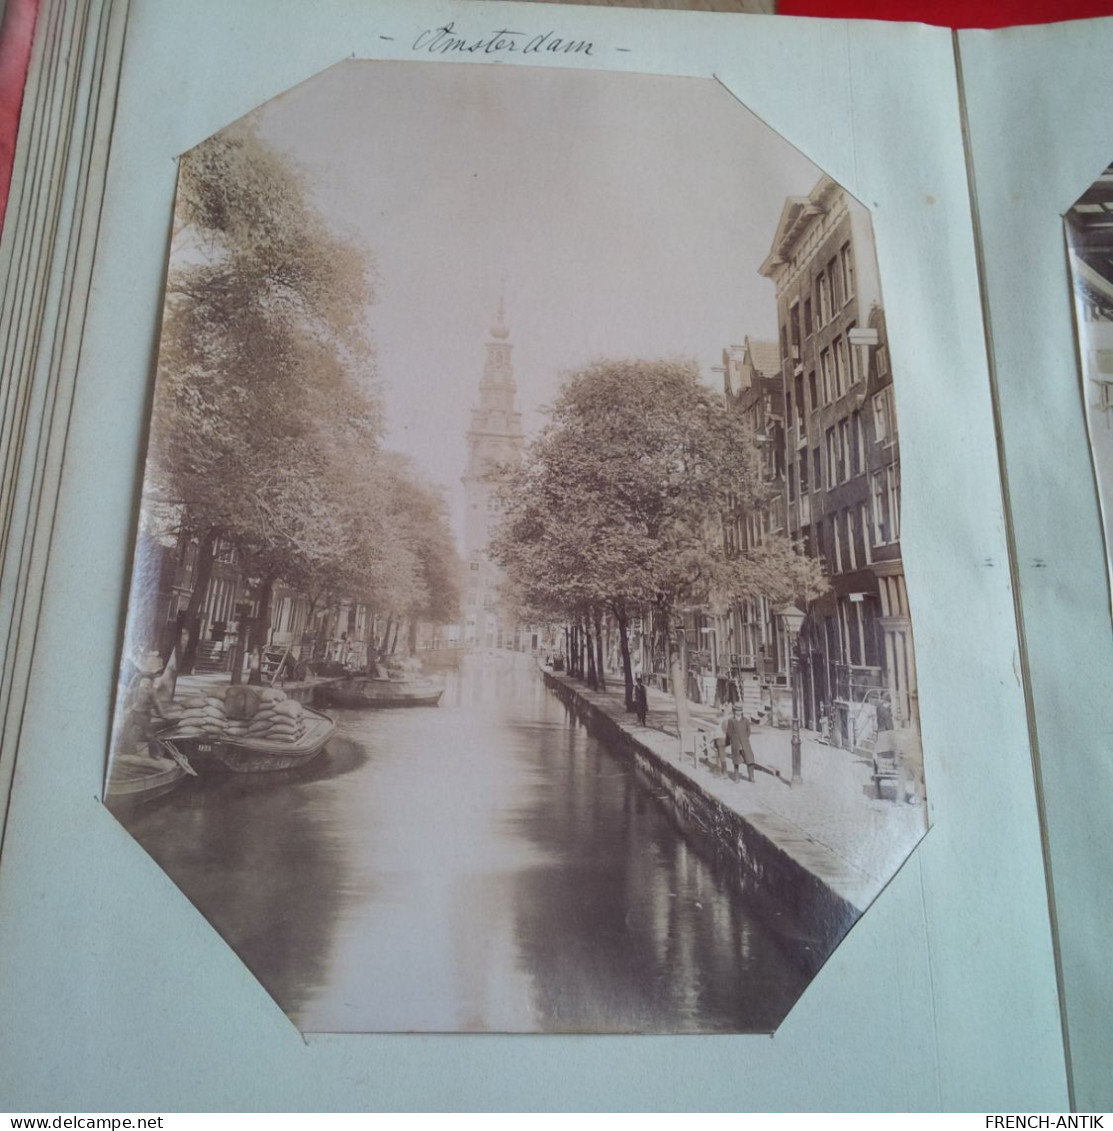 ALBUM 60 PHOTO PAYS BAS PERIODE 1890 DONT HARLEM AMSTERDAM QUARTIER DES JUIFS LA HAYE ET TABLEAU REMBRANDT